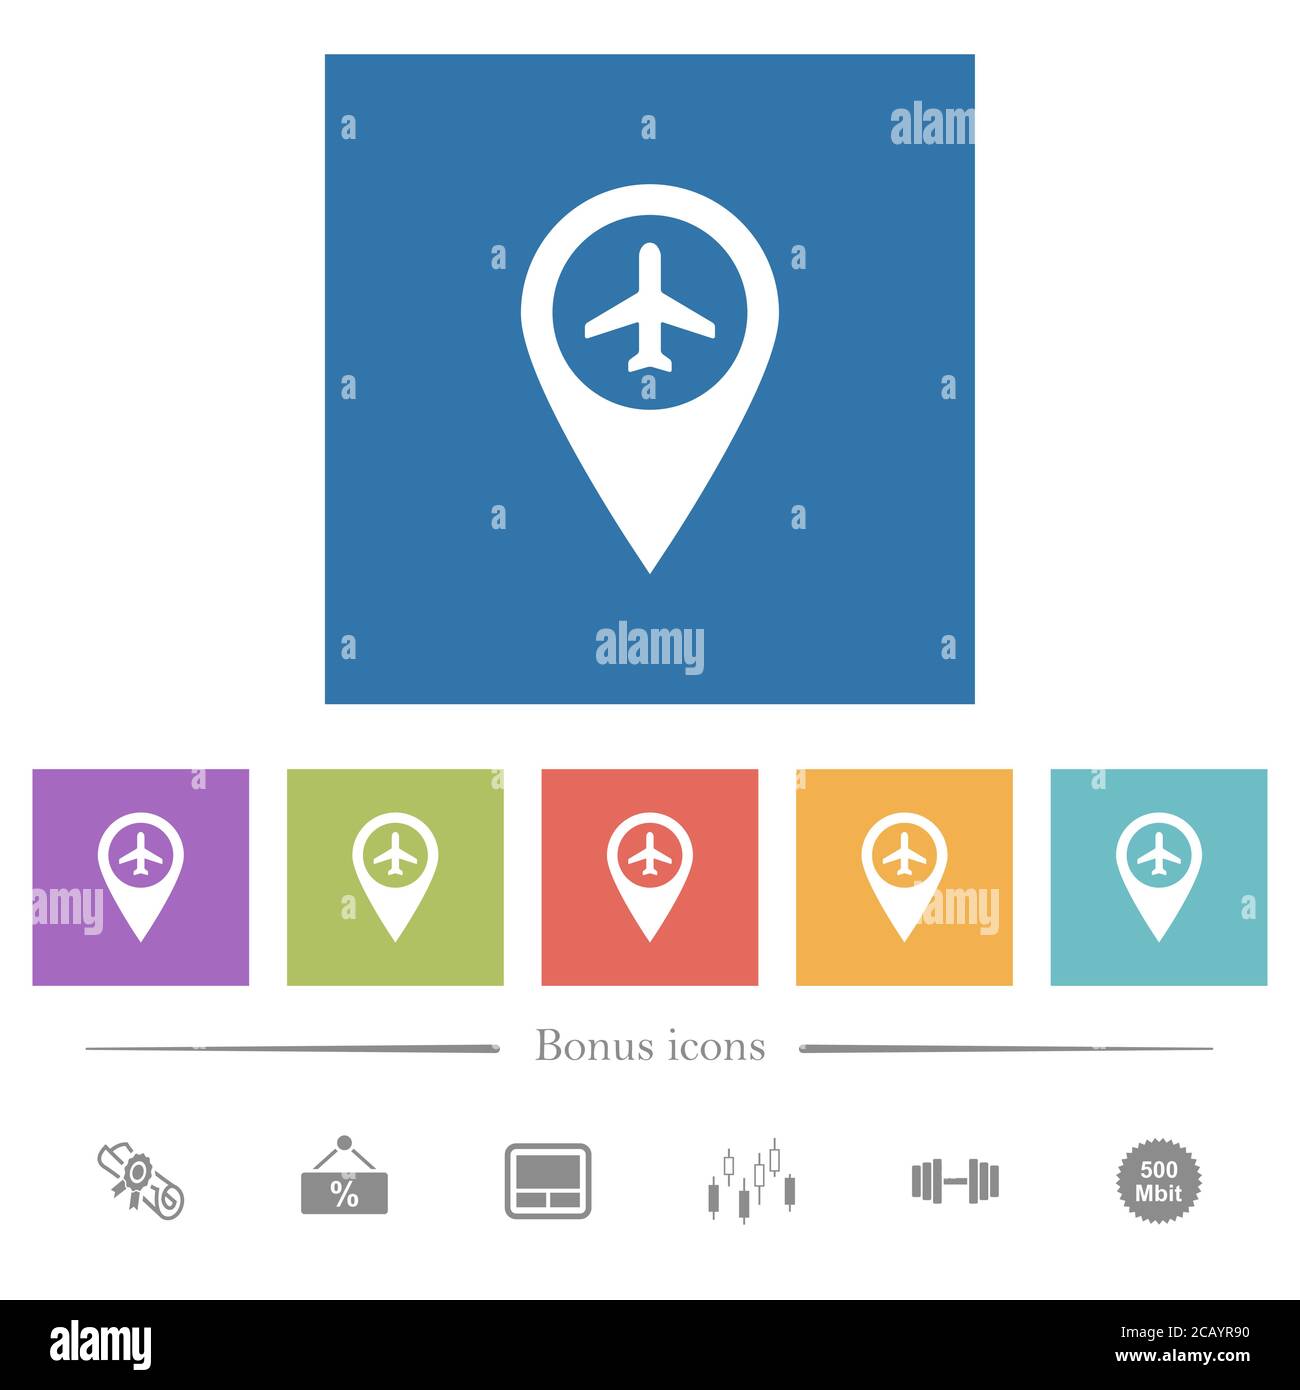 Emplacement de la carte GPS de l'aéroport icônes blanches plates sur fond carré. 6 icônes bonus incluses. Illustration de Vecteur